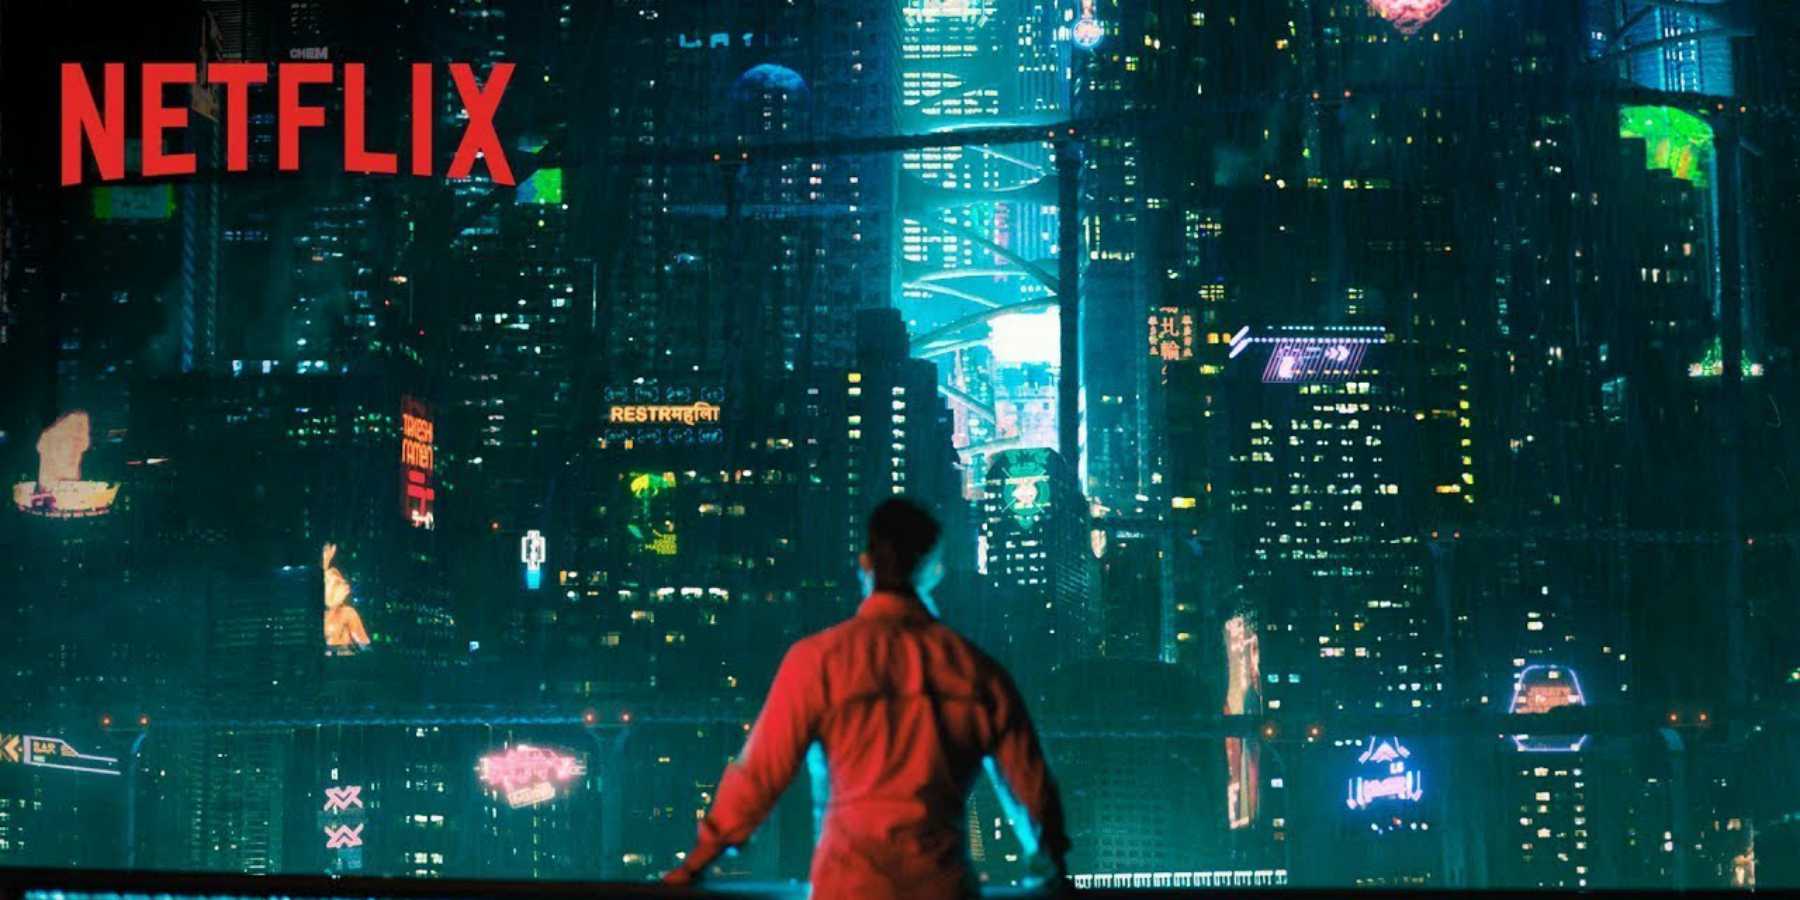 Netflix estrena video especial de su nueva serie cyberpunk Altered Carbon